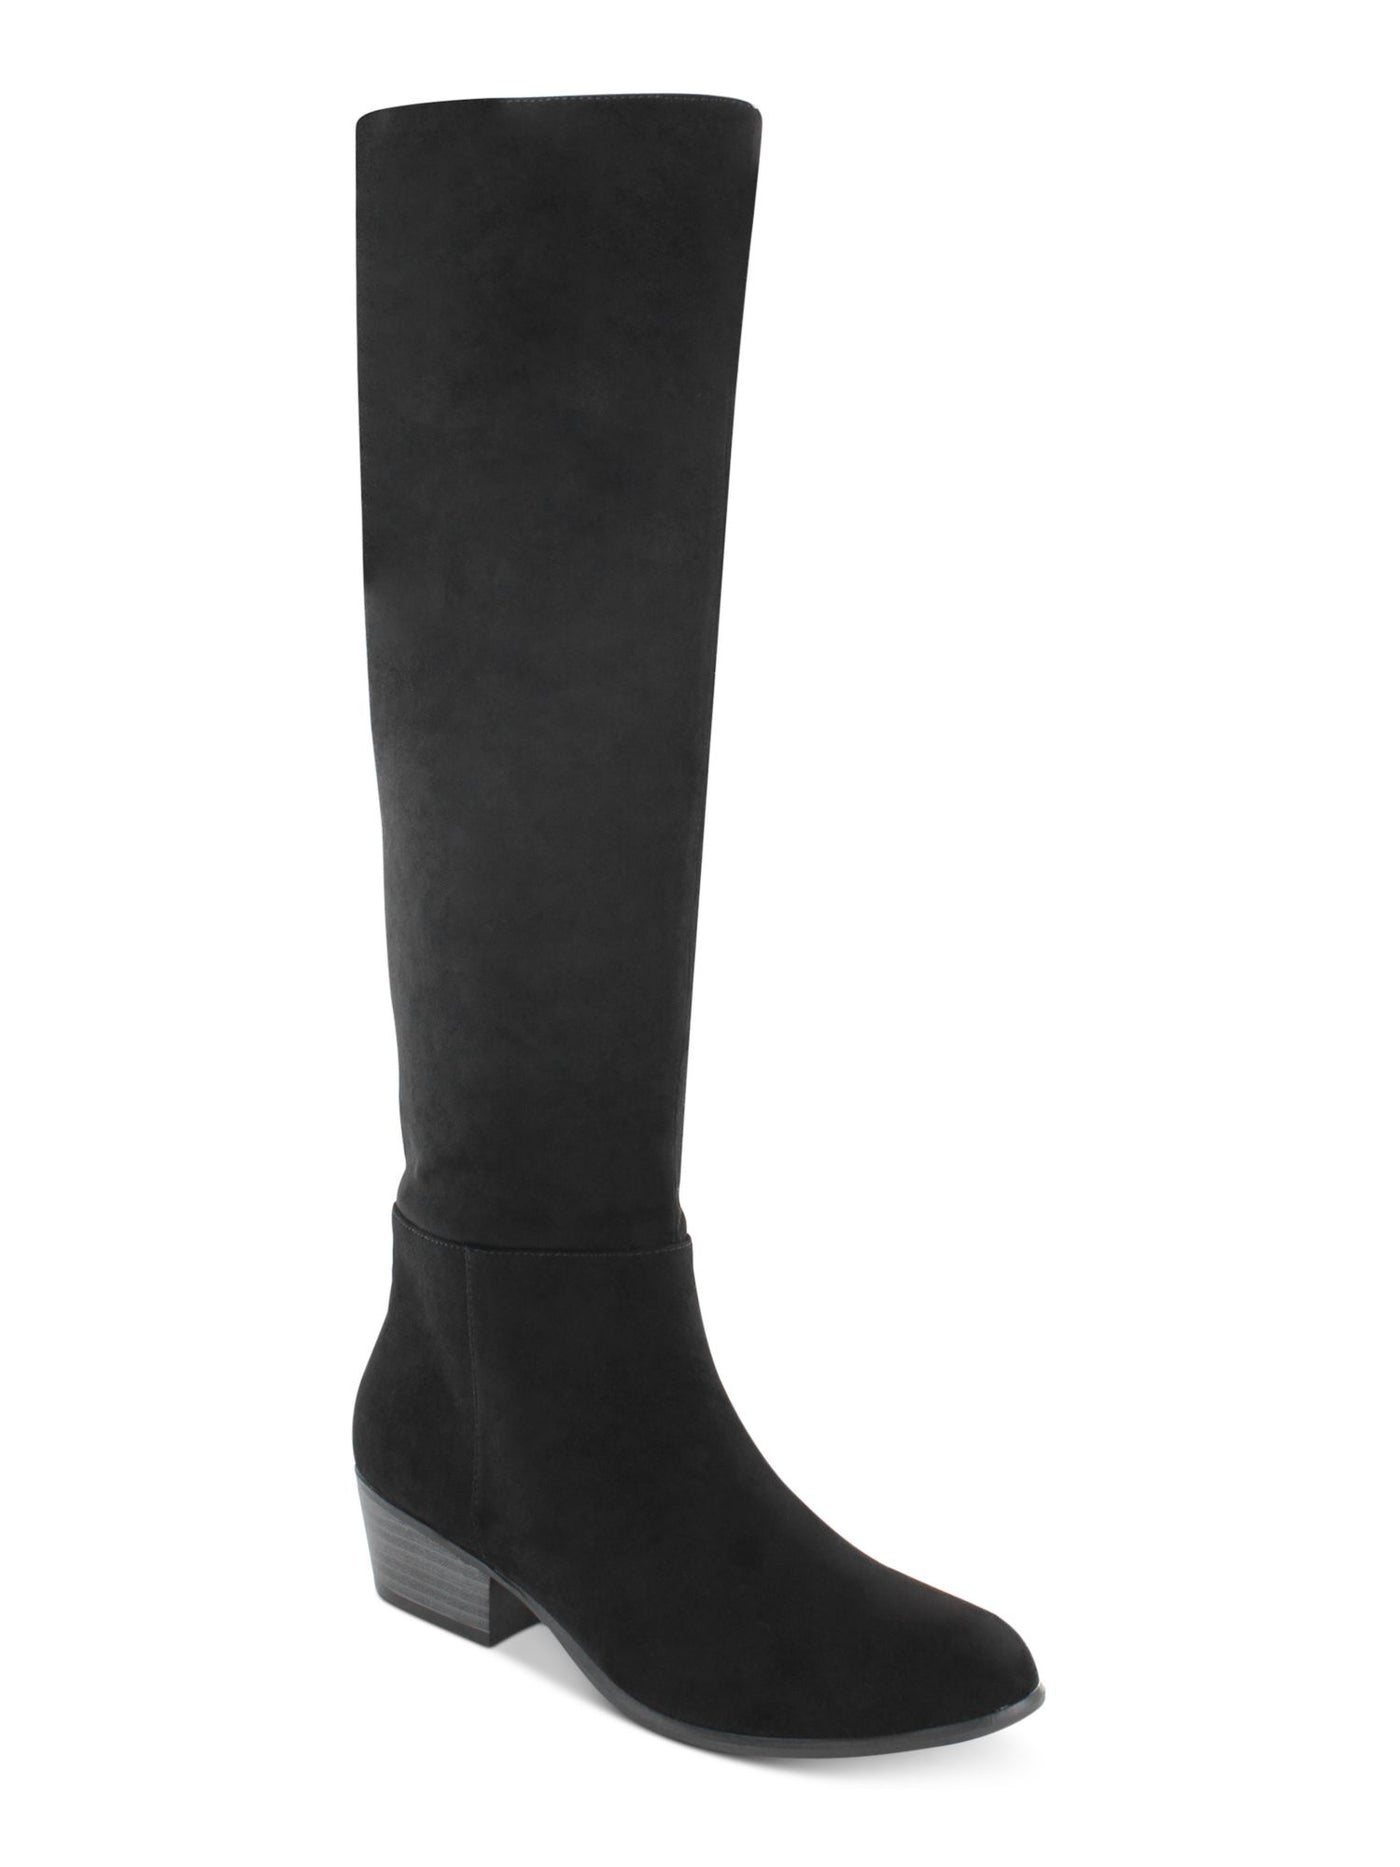 ESPRIT Womens Black Non-Slip Comfort Treasure Round Toe Block Heel Zip-Up Dress Boots 10 M